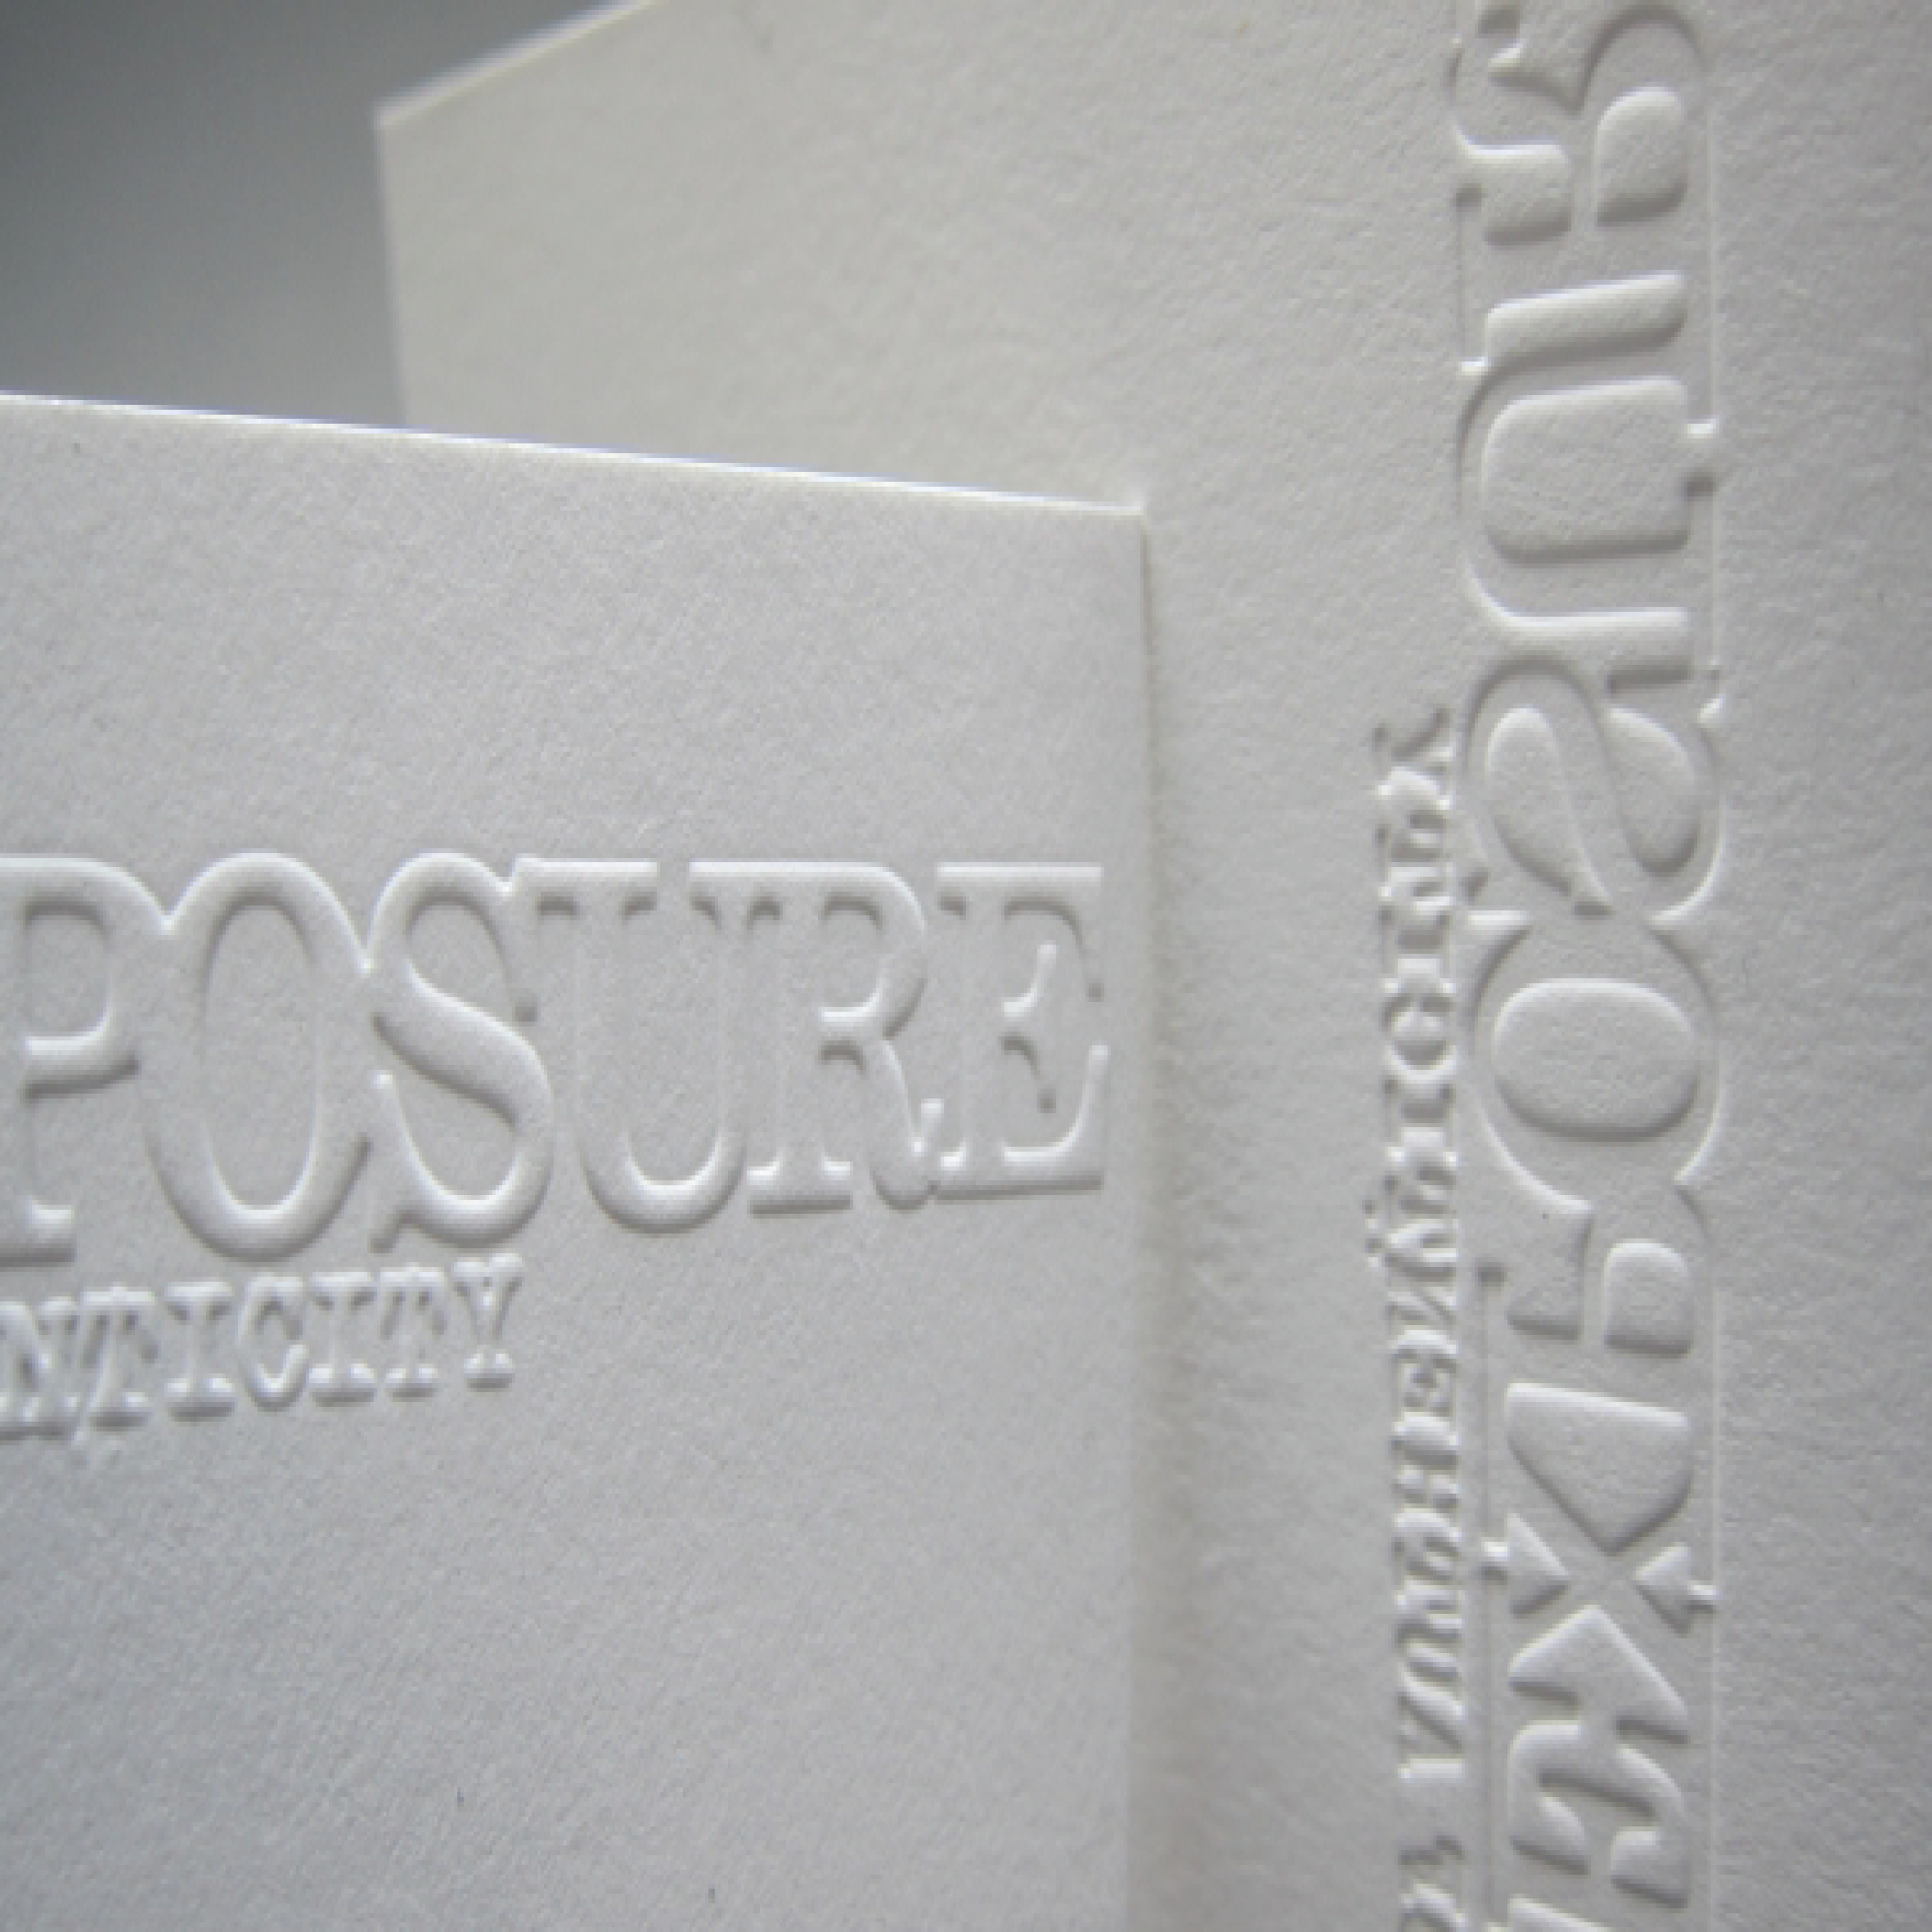 embossing vs letterpress